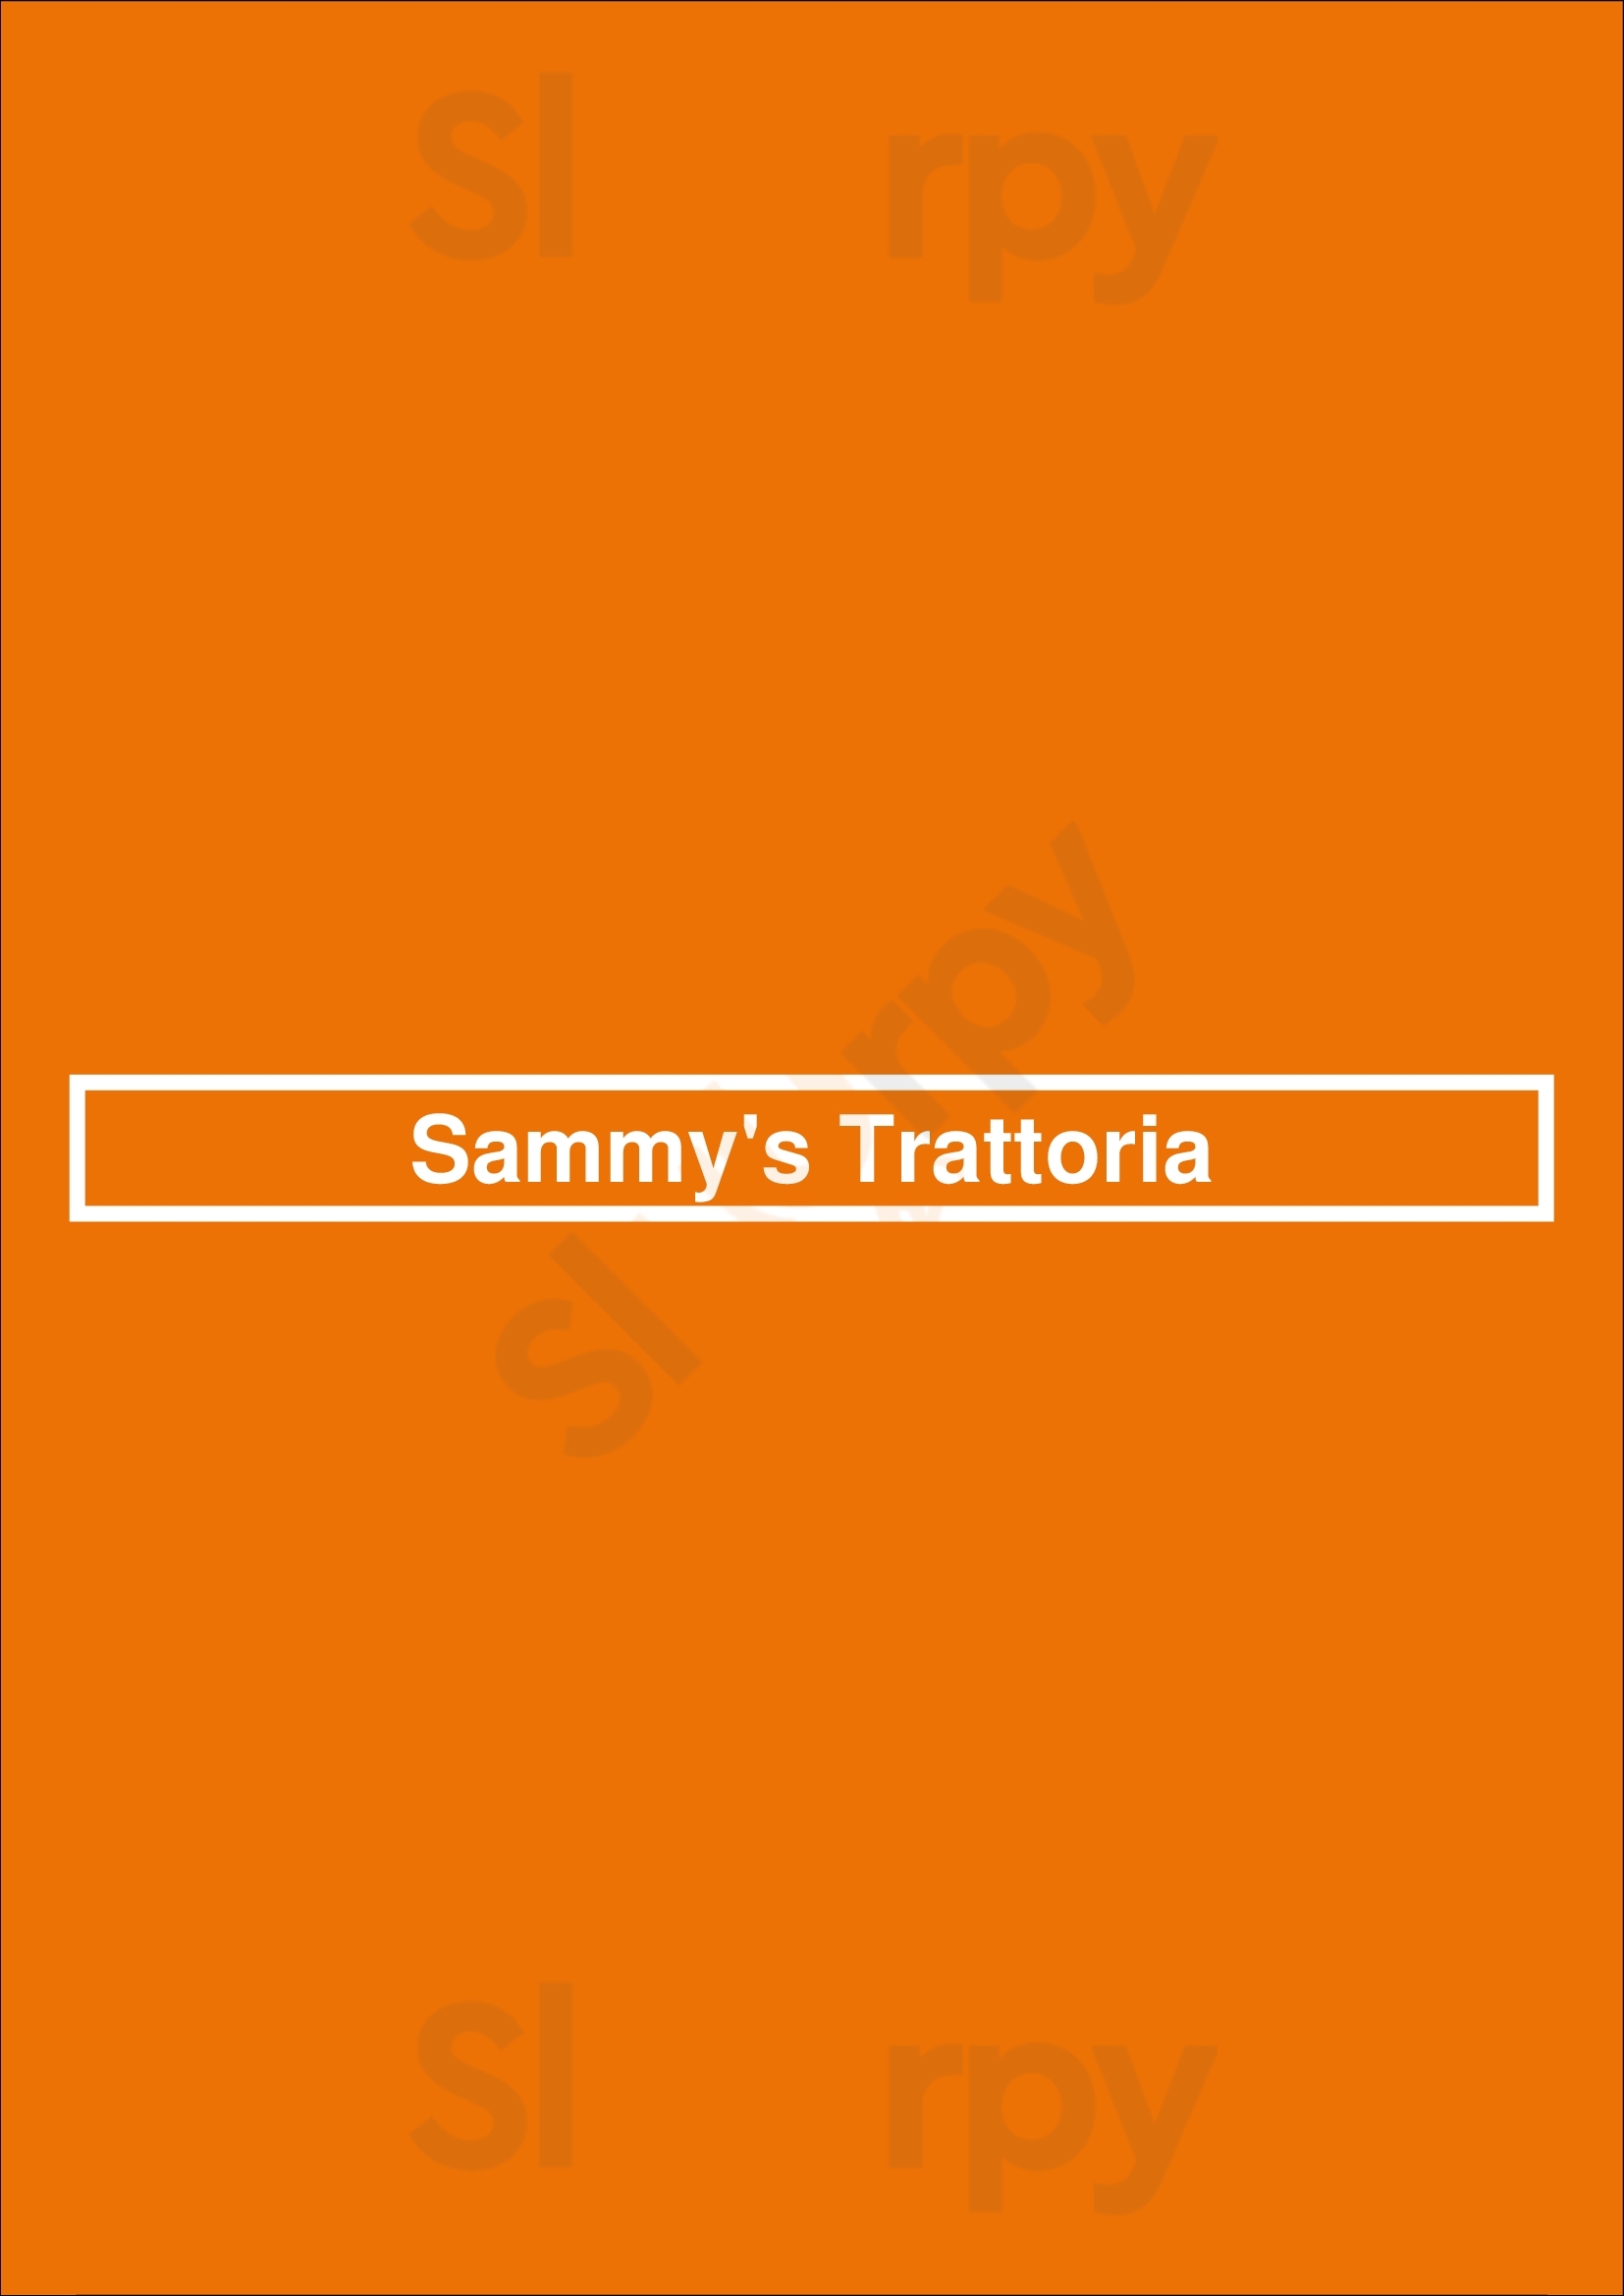 Sammy's Trattoria Baltimore Menu - 1